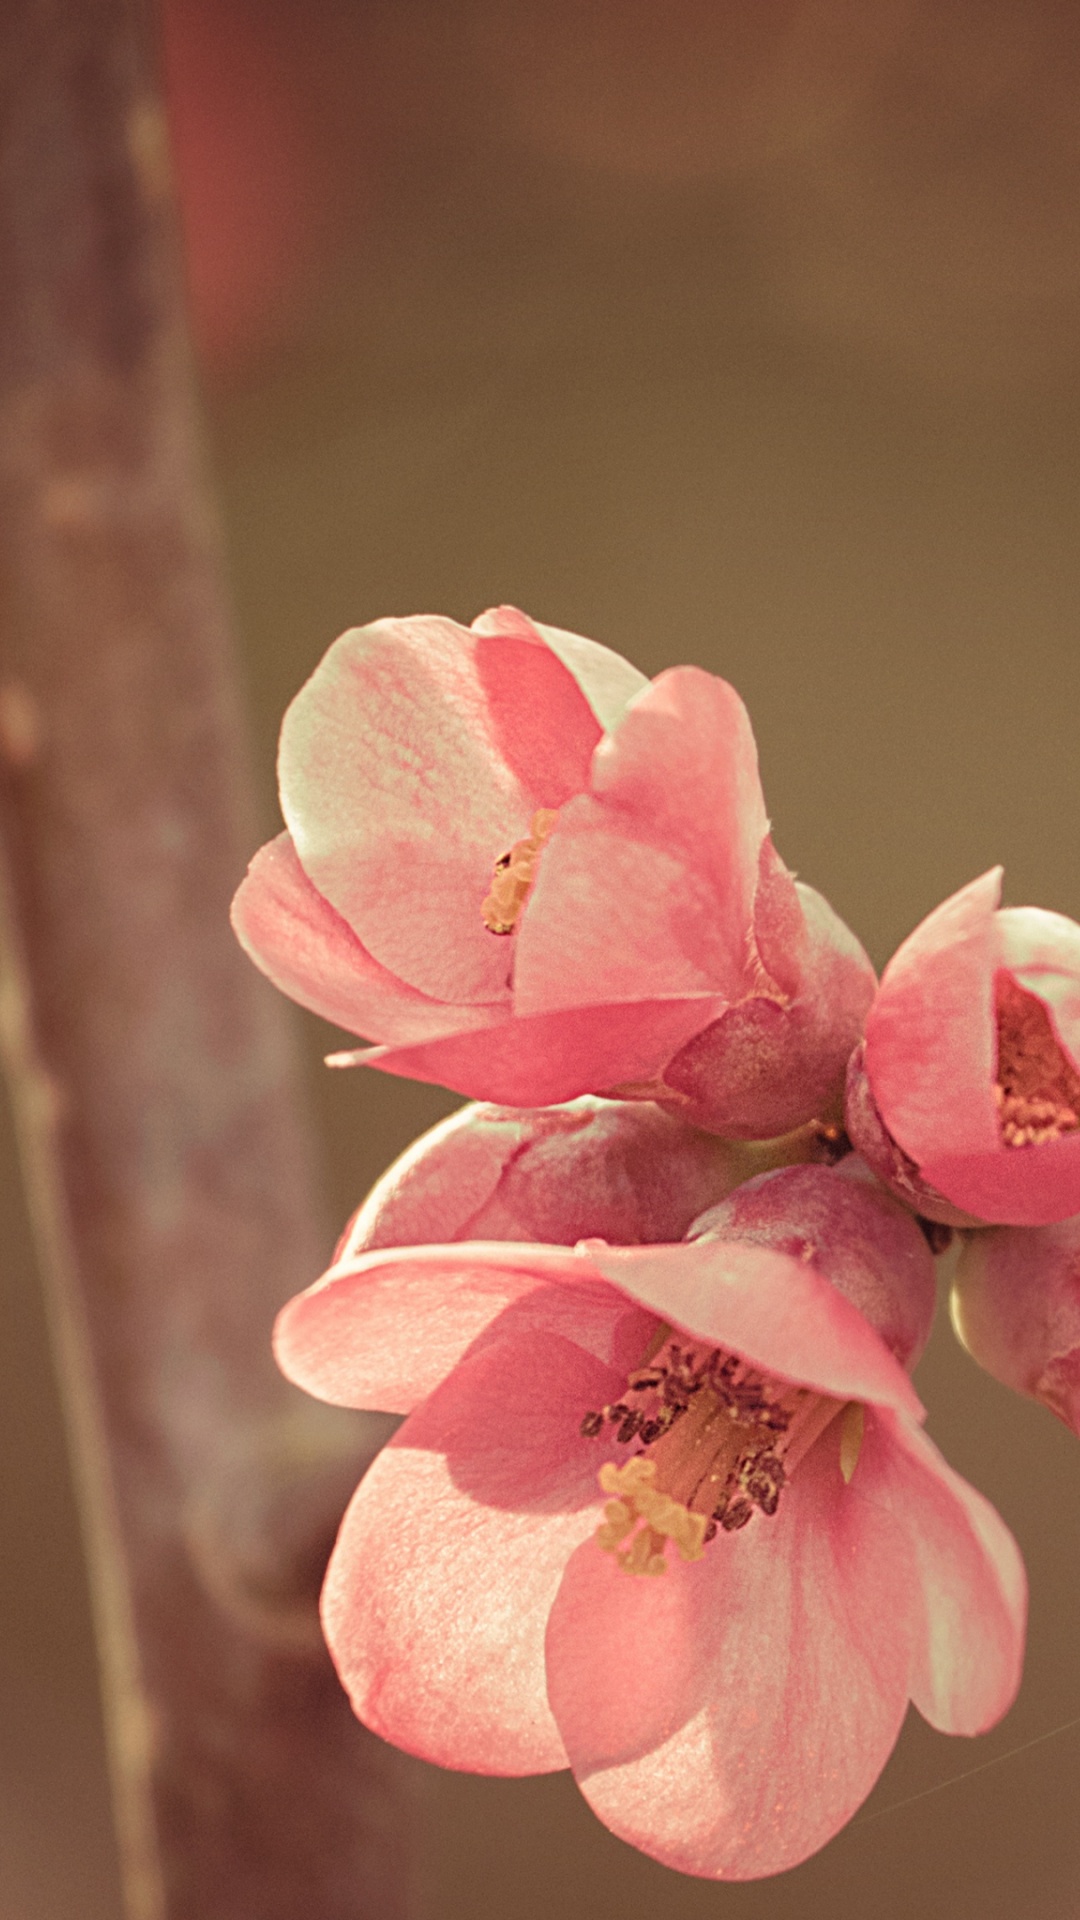 樱花, 粉红色, 弹簧, 开花, 树枝 壁纸 1080x1920 允许